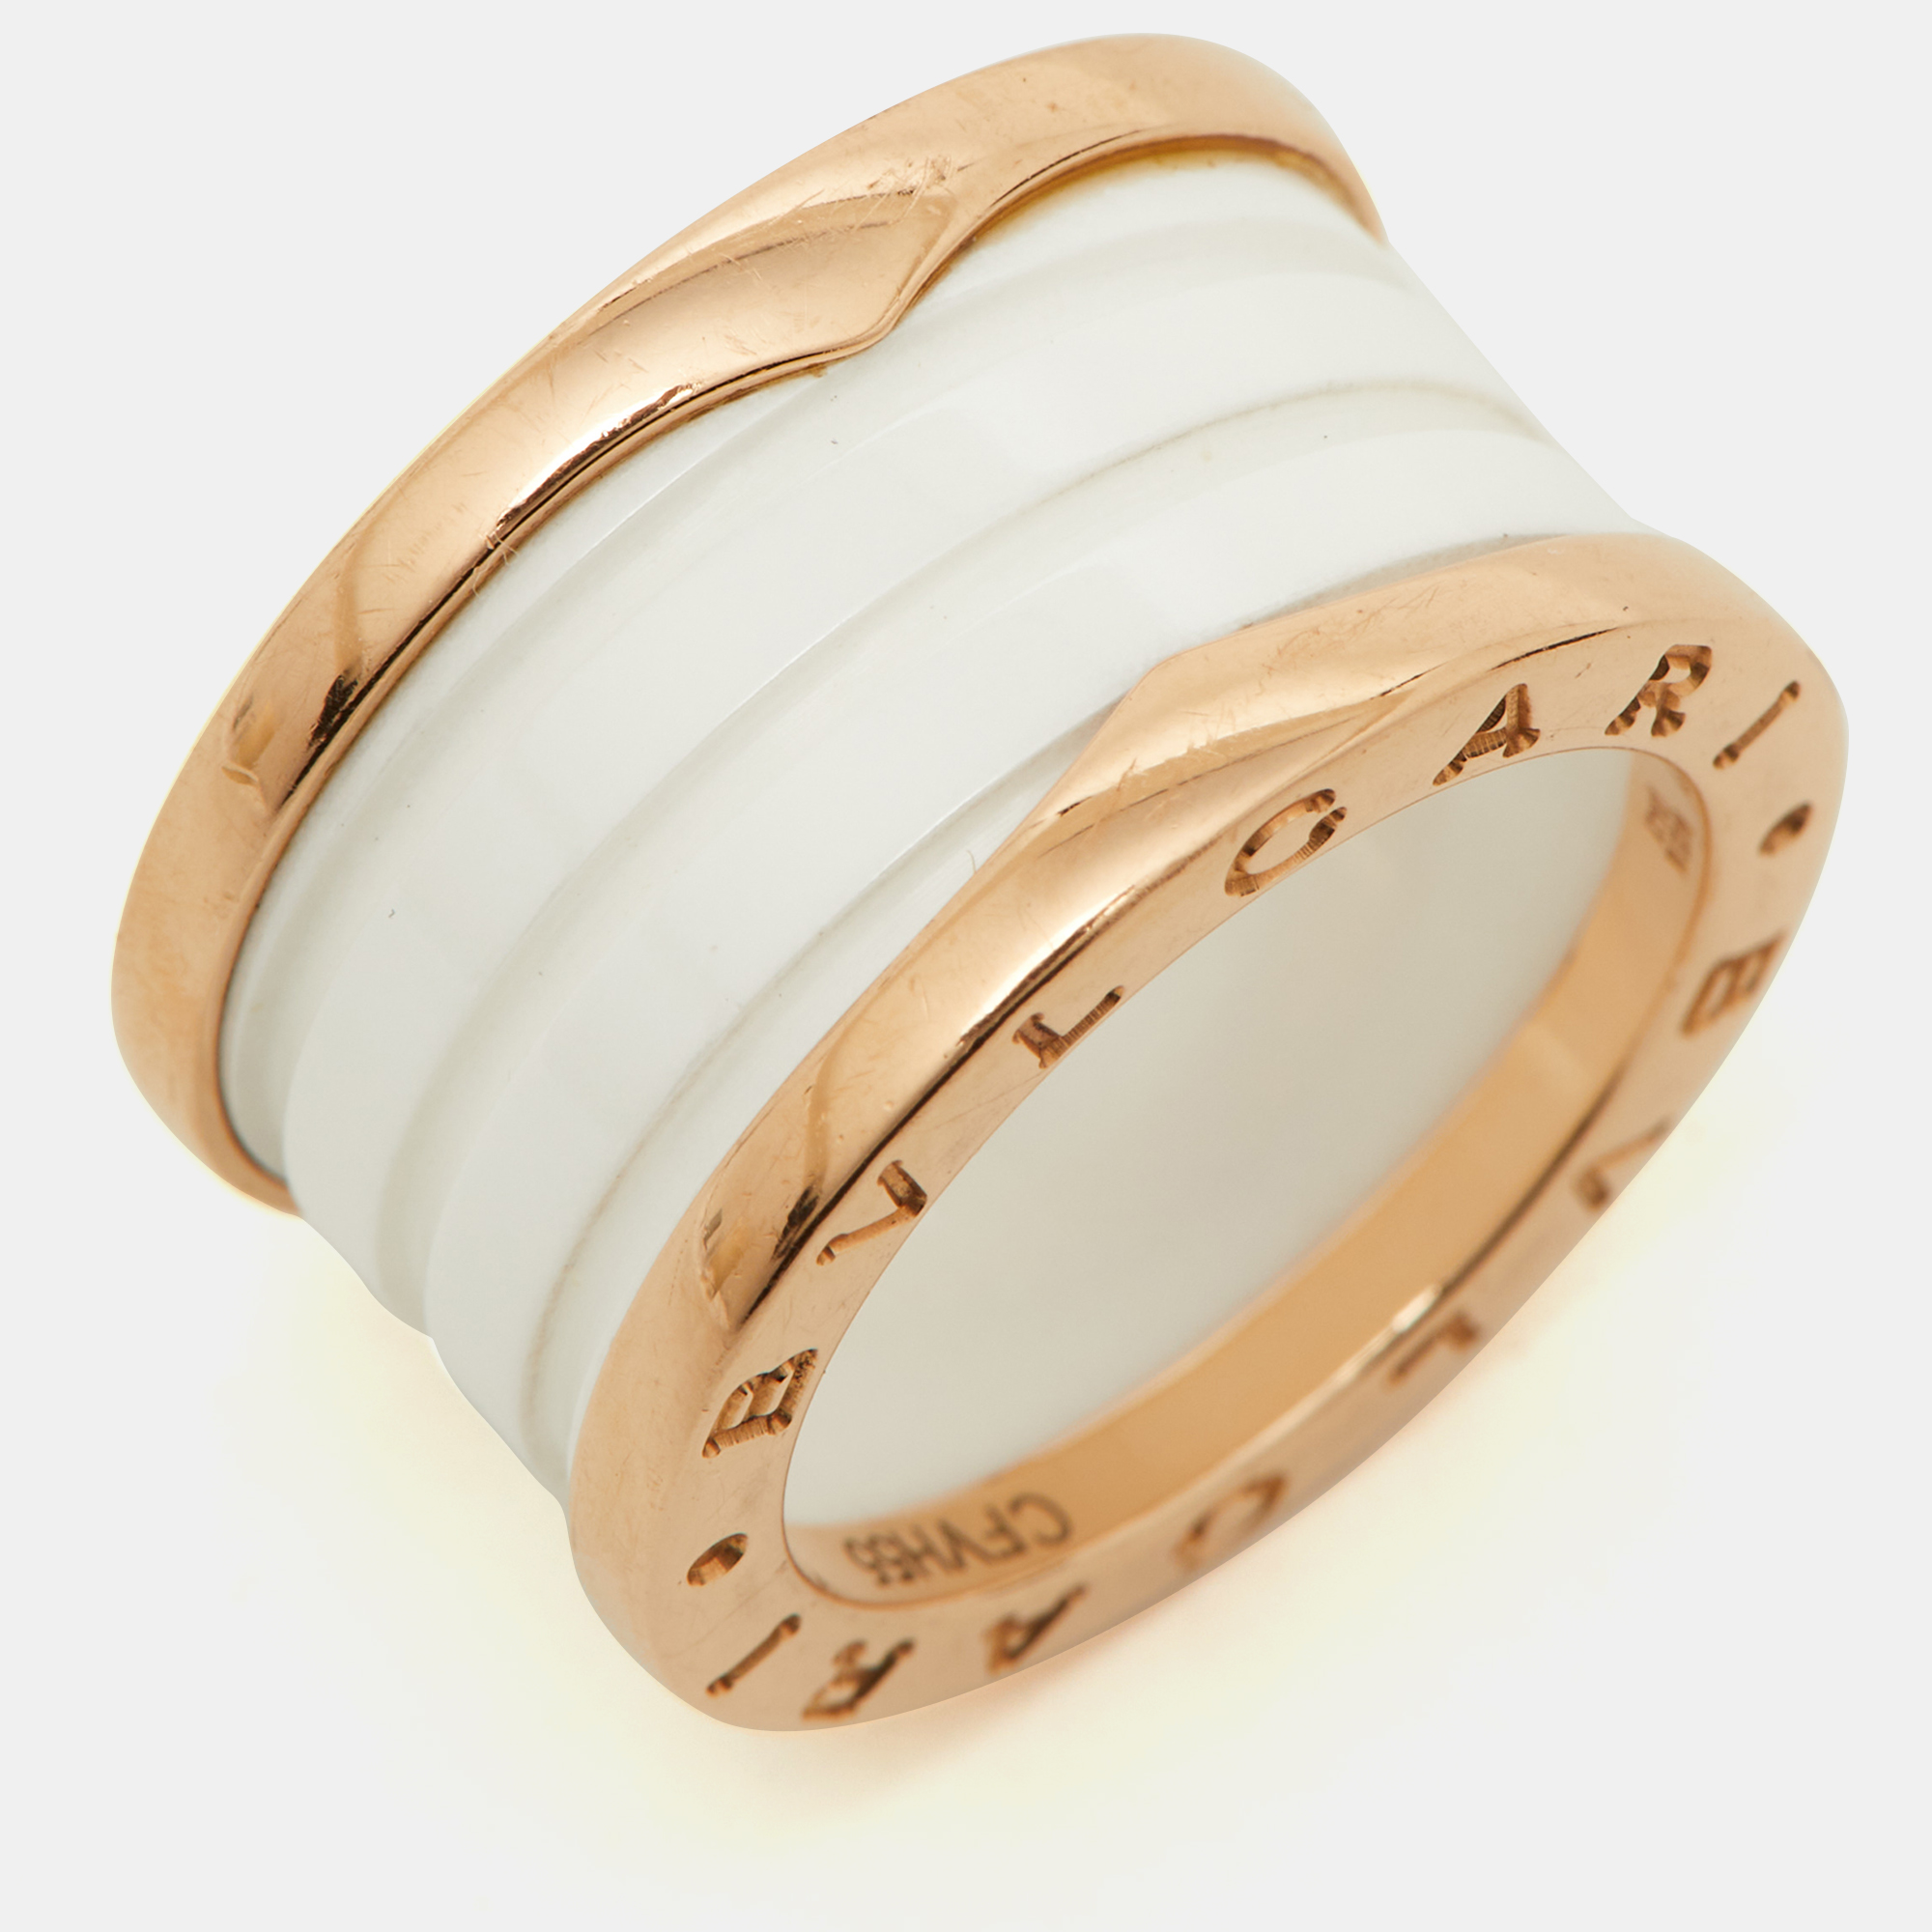 Bvlgari B.Zero1 White Ceramic 18k Rose Gold Band Ring Size 50